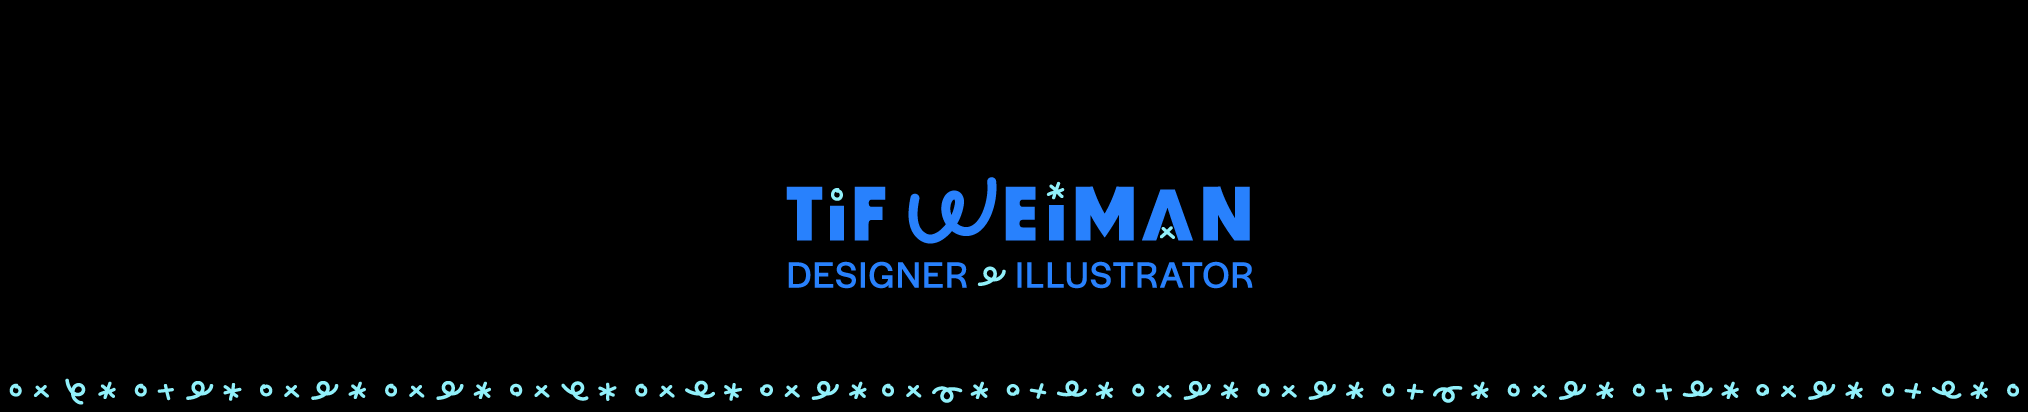 Баннер профиля Tif Weiman